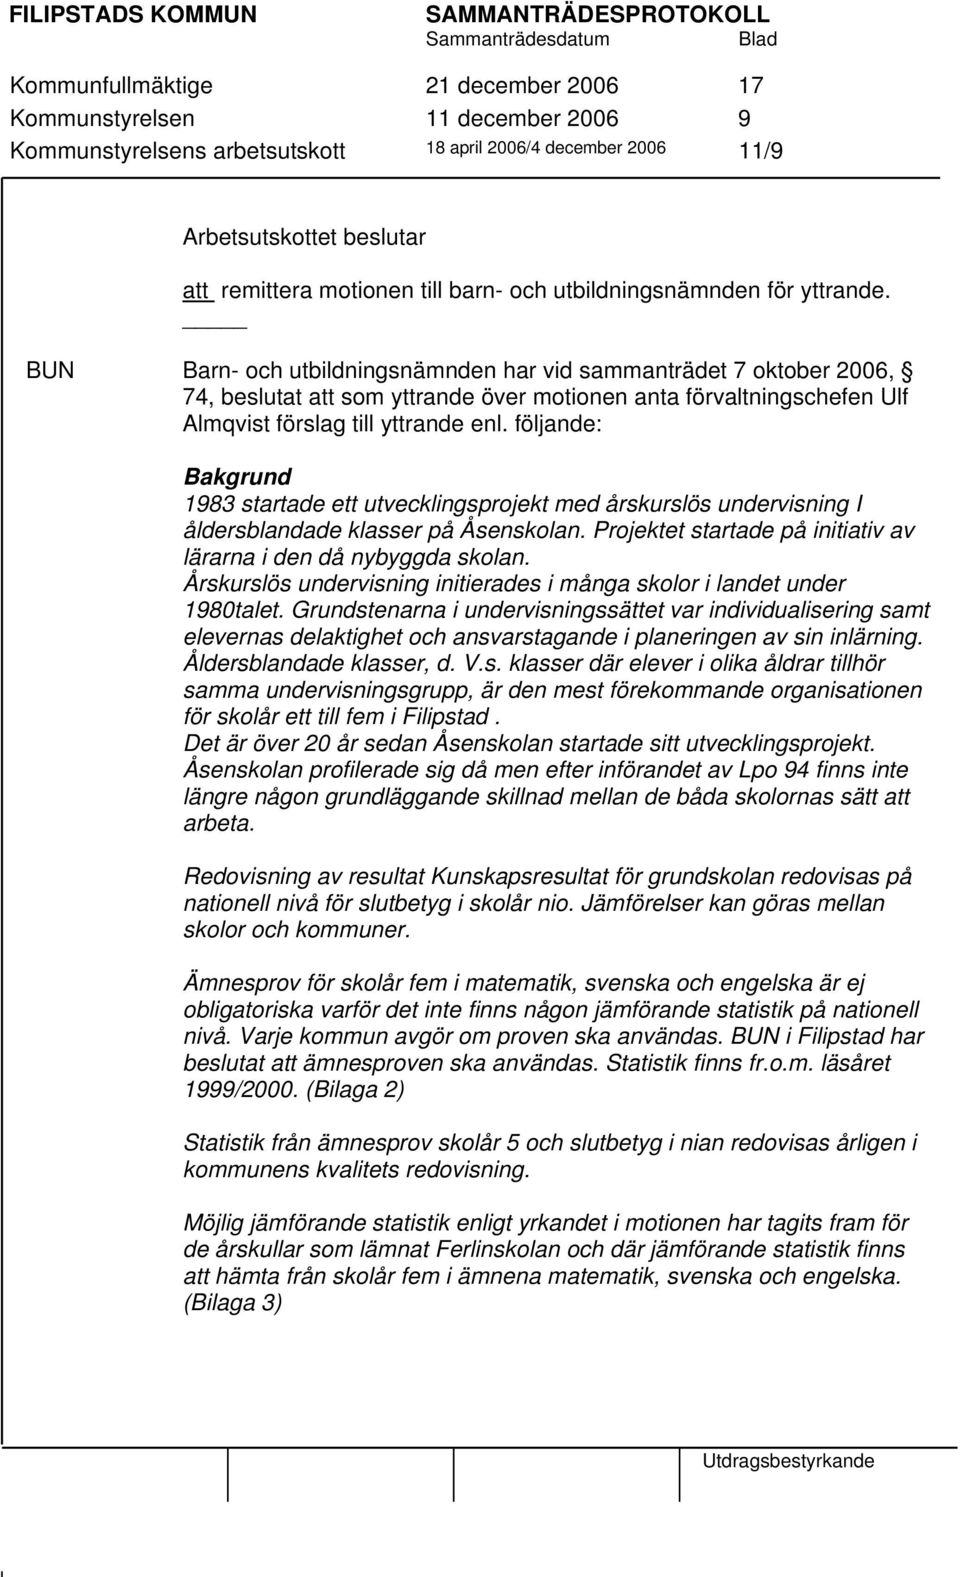 BUN Barn- och utbildningsnämnden har vid sammanträdet 7 oktober 2006, 74, beslutat att som yttrande över motionen anta förvaltningschefen Ulf Almqvist förslag till yttrande enl.